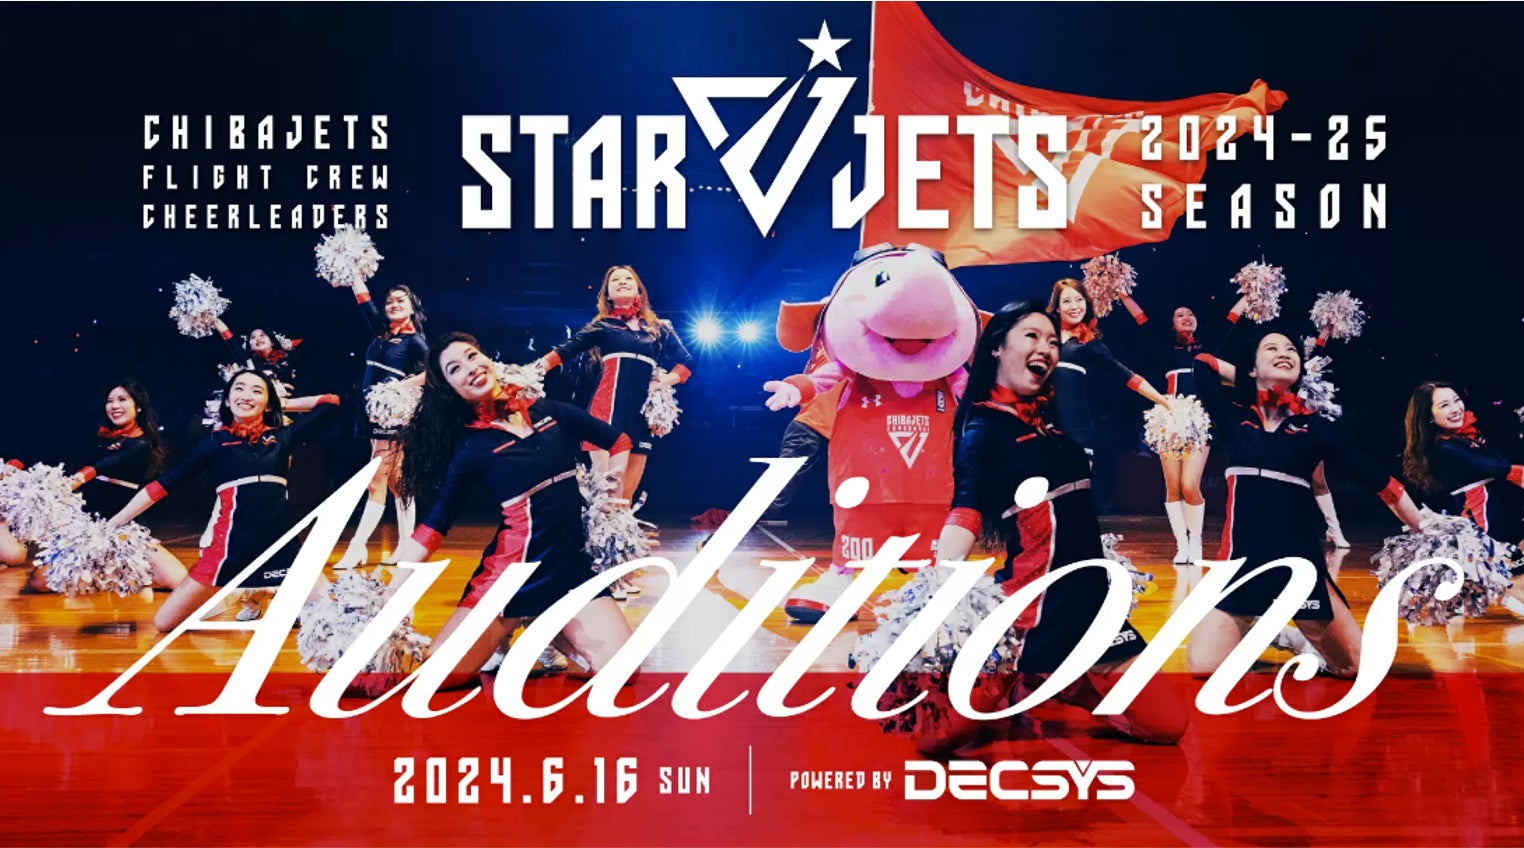 【Bリーグ】「千葉ジェッツ」フライトクルーチアリーダーズ「STAR JETS」2024-25シーズンメンバーオーディション powered by DECSYS開催のお知らせ